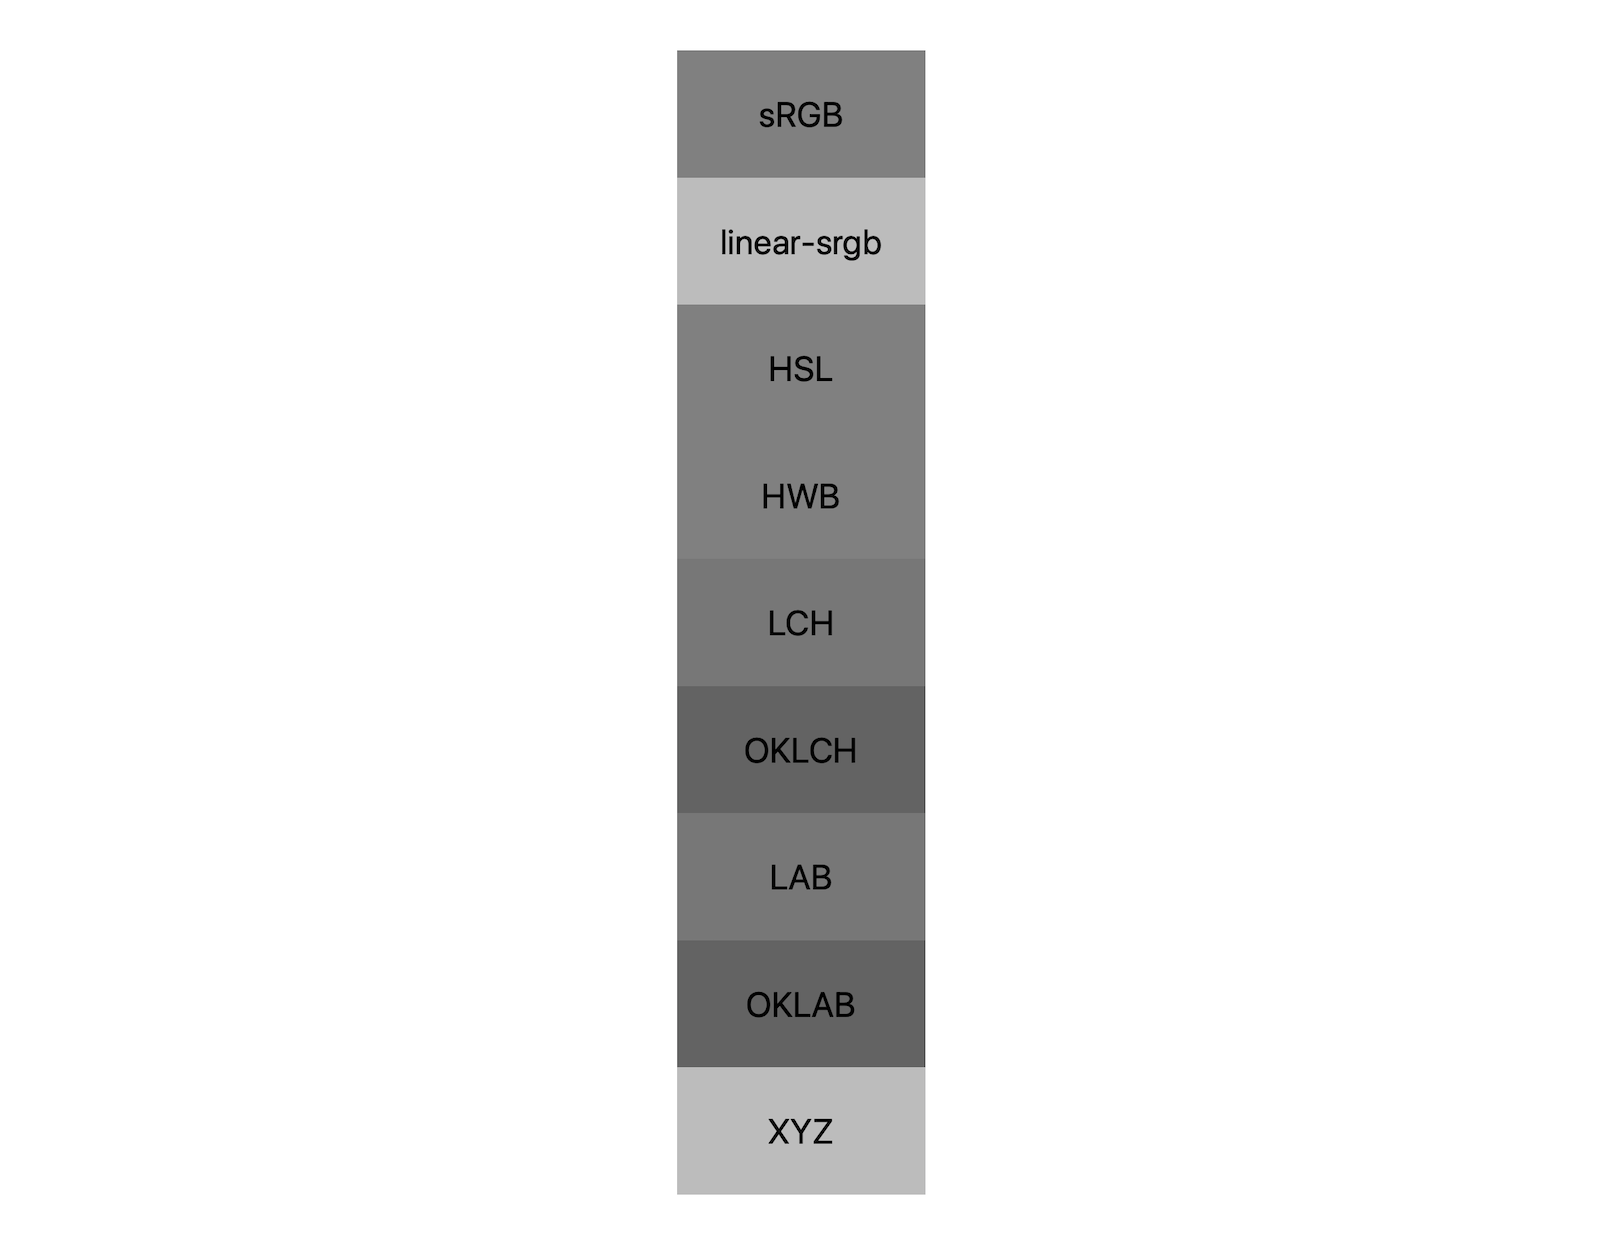 सात अलग-अलग कलर स्पेस (एसआरजीबी, लीनियर-एसआरजीबी, lch, oklch, lab, oklab, xyz) होने के बाद, दोनों ही ब्लैक और व्हाइट को मिलाकर नतीजे दिखाते हैं. इसमें करीब पांच अलग-अलग शेड दिखाए गए हैं, जिनसे पता चलता है कि हर कलर स्पेस एक ग्रे रंग से भी अलग होगा.